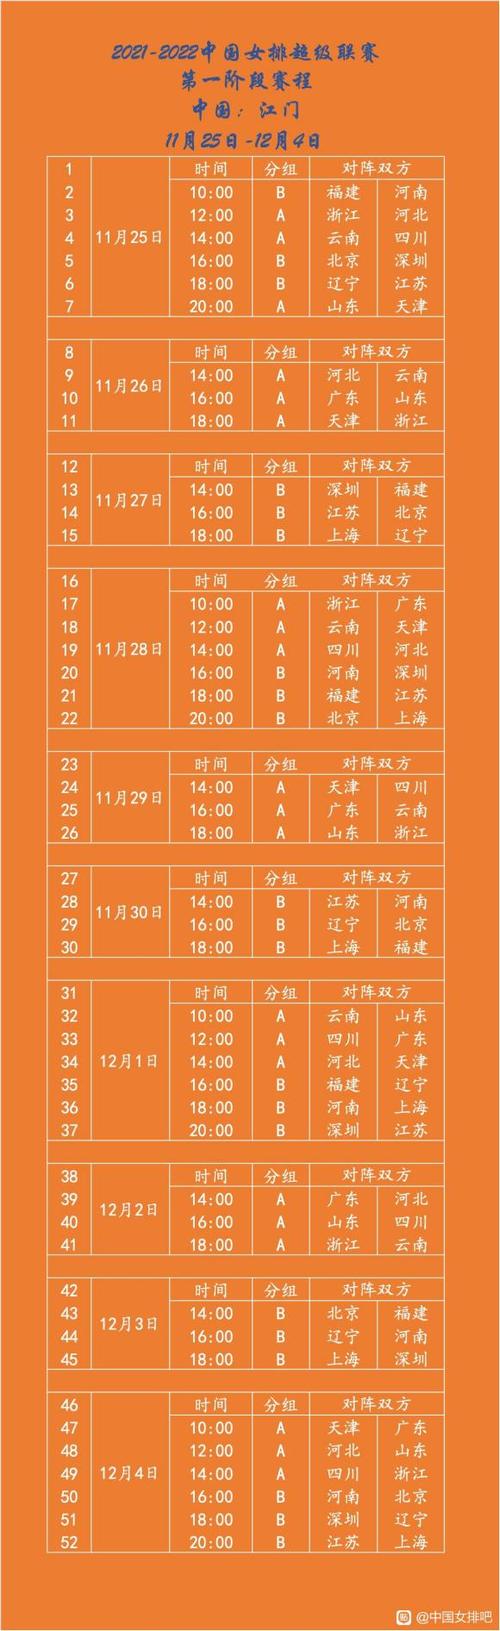 中国女排2022年比赛决赛日程表